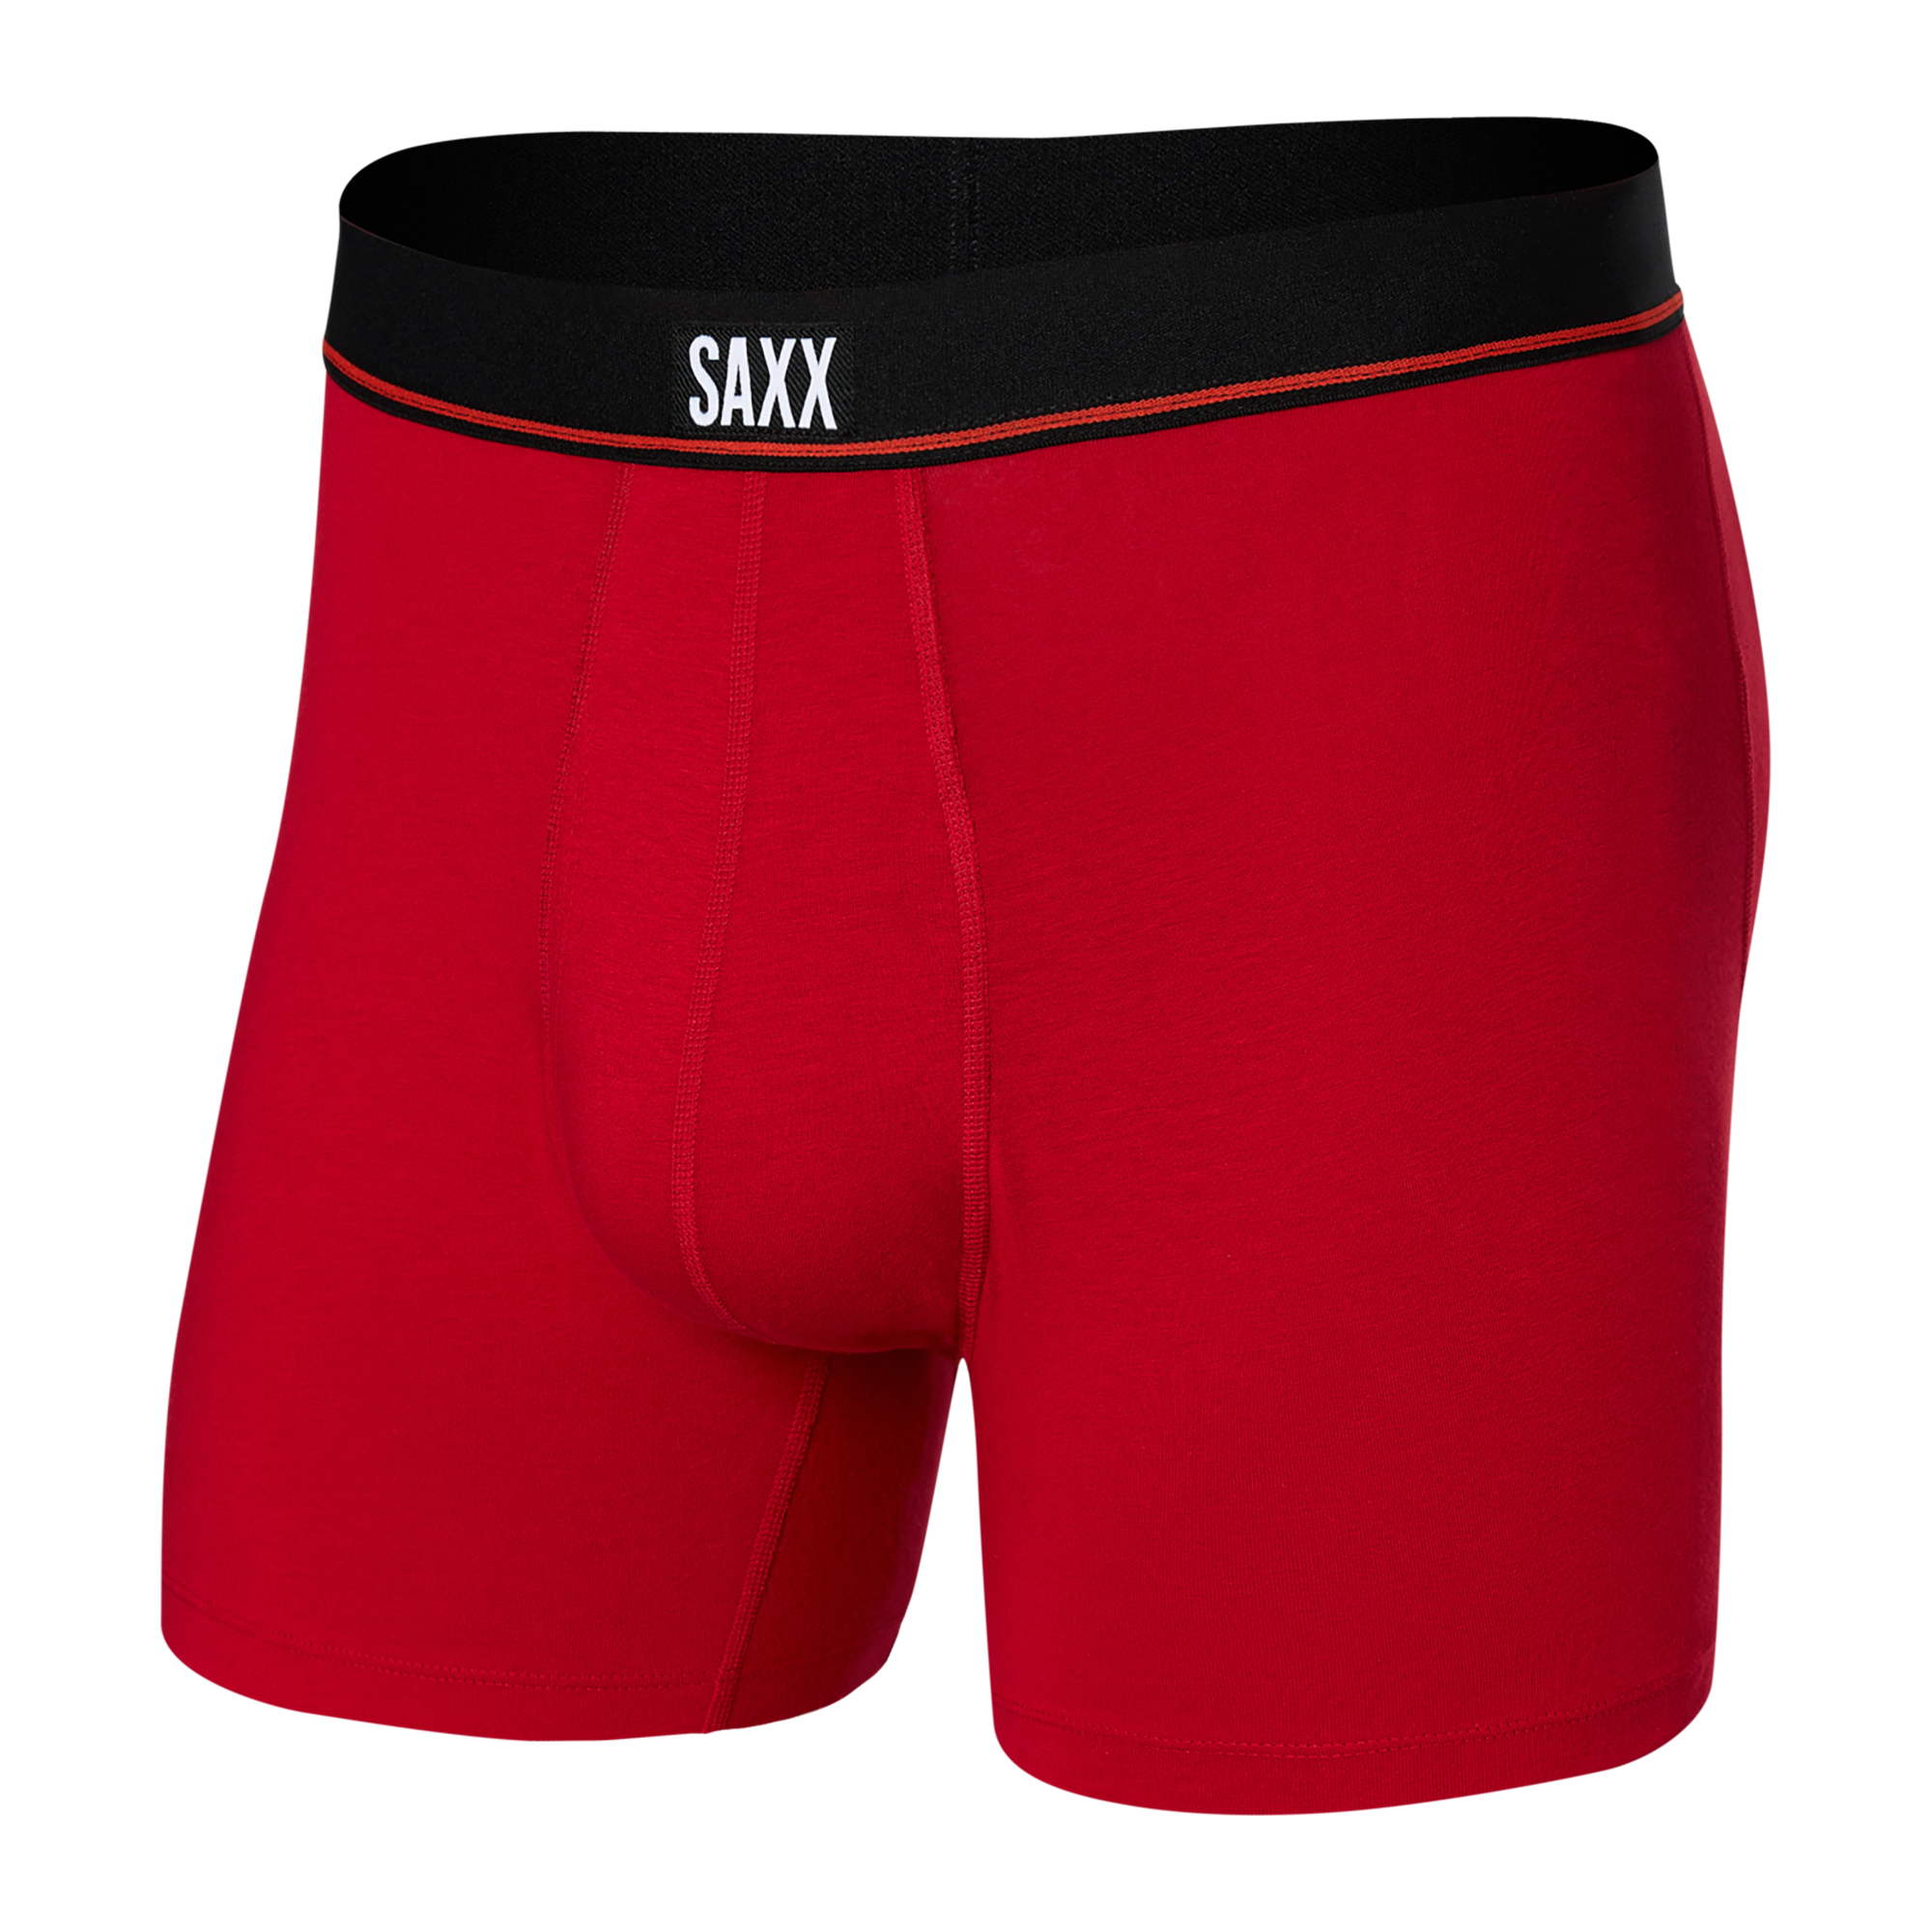 SAXX Men's Underwear - Non-Stop Stretch Cotton with Built-in Pouch Support  - Underwear for Men